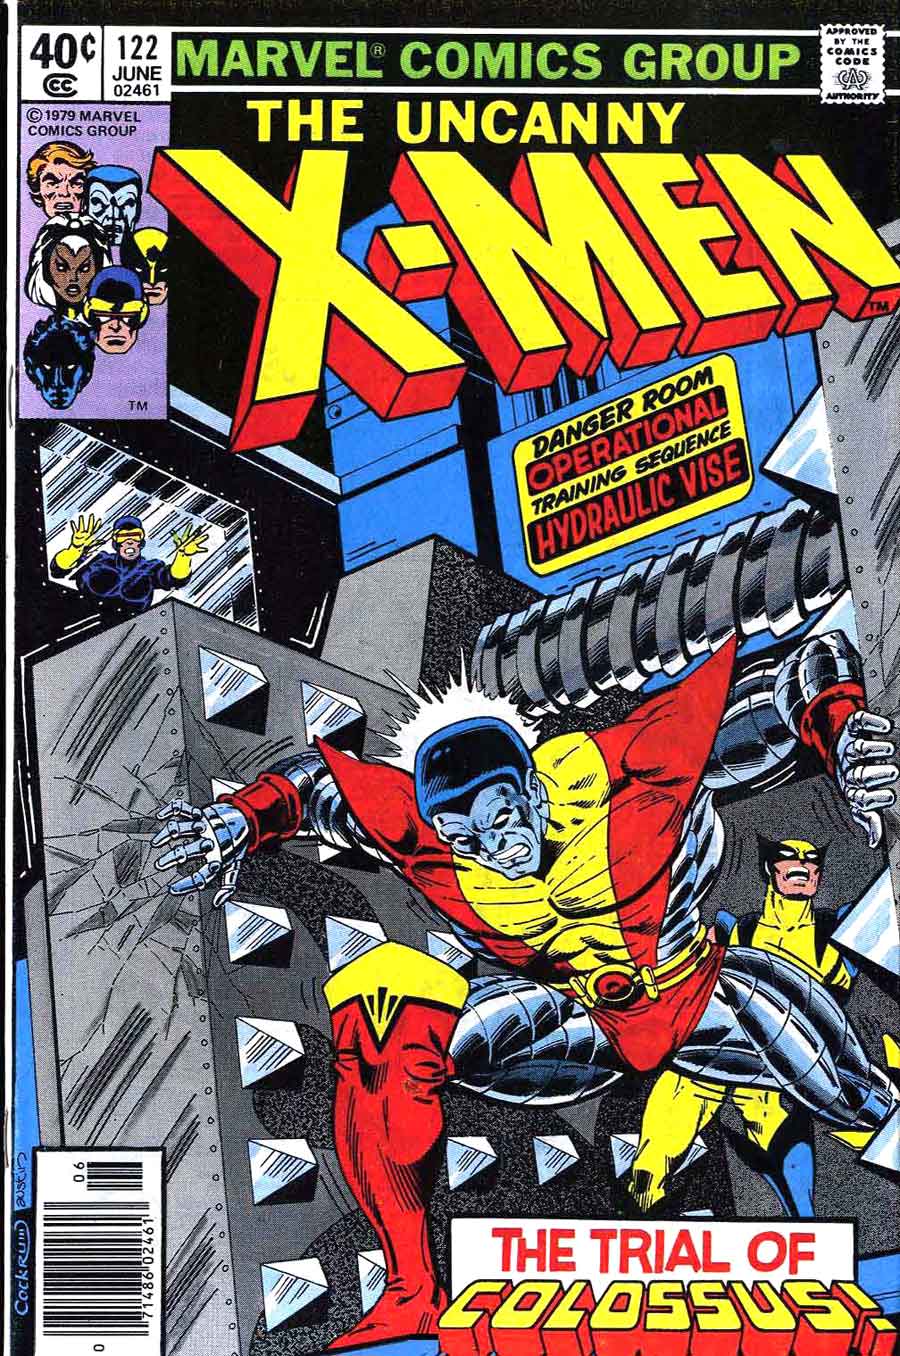 X-men v1 #122 marvel comic book cover art by John Byrne